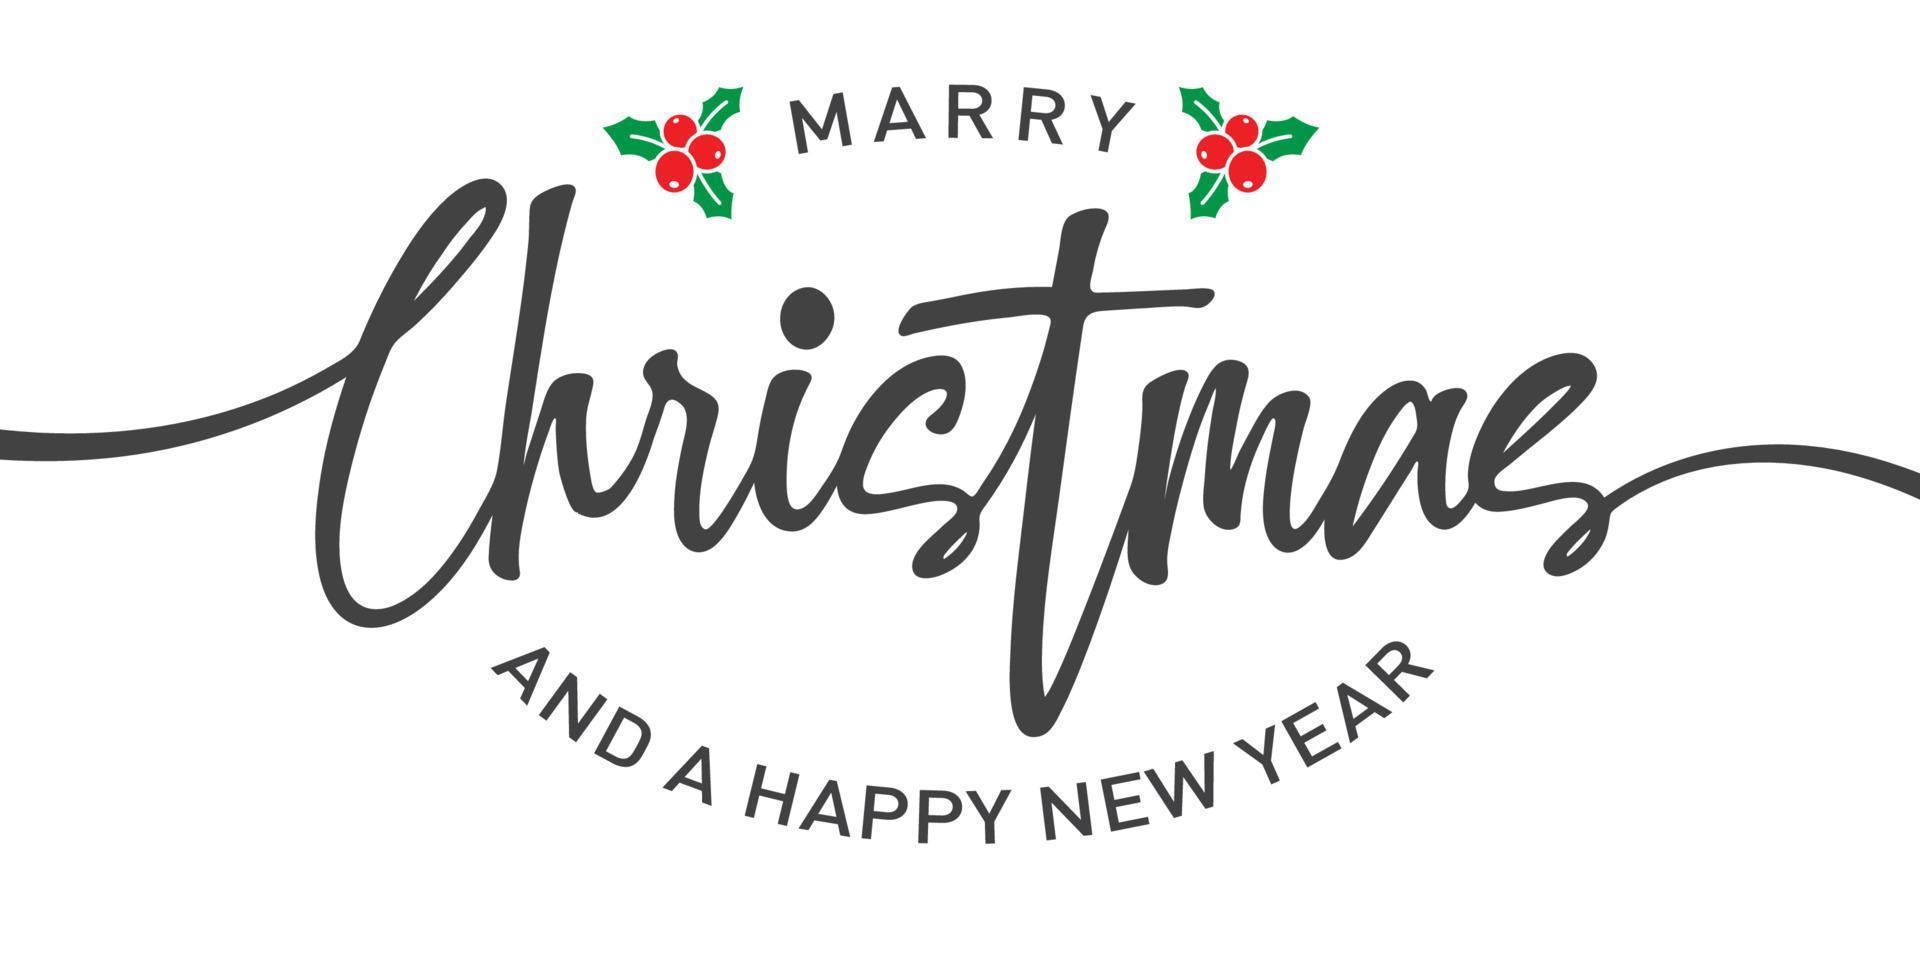 sposare Natale e contento nuovo anno lettering design. Natale manifesto. vettore illustrazione